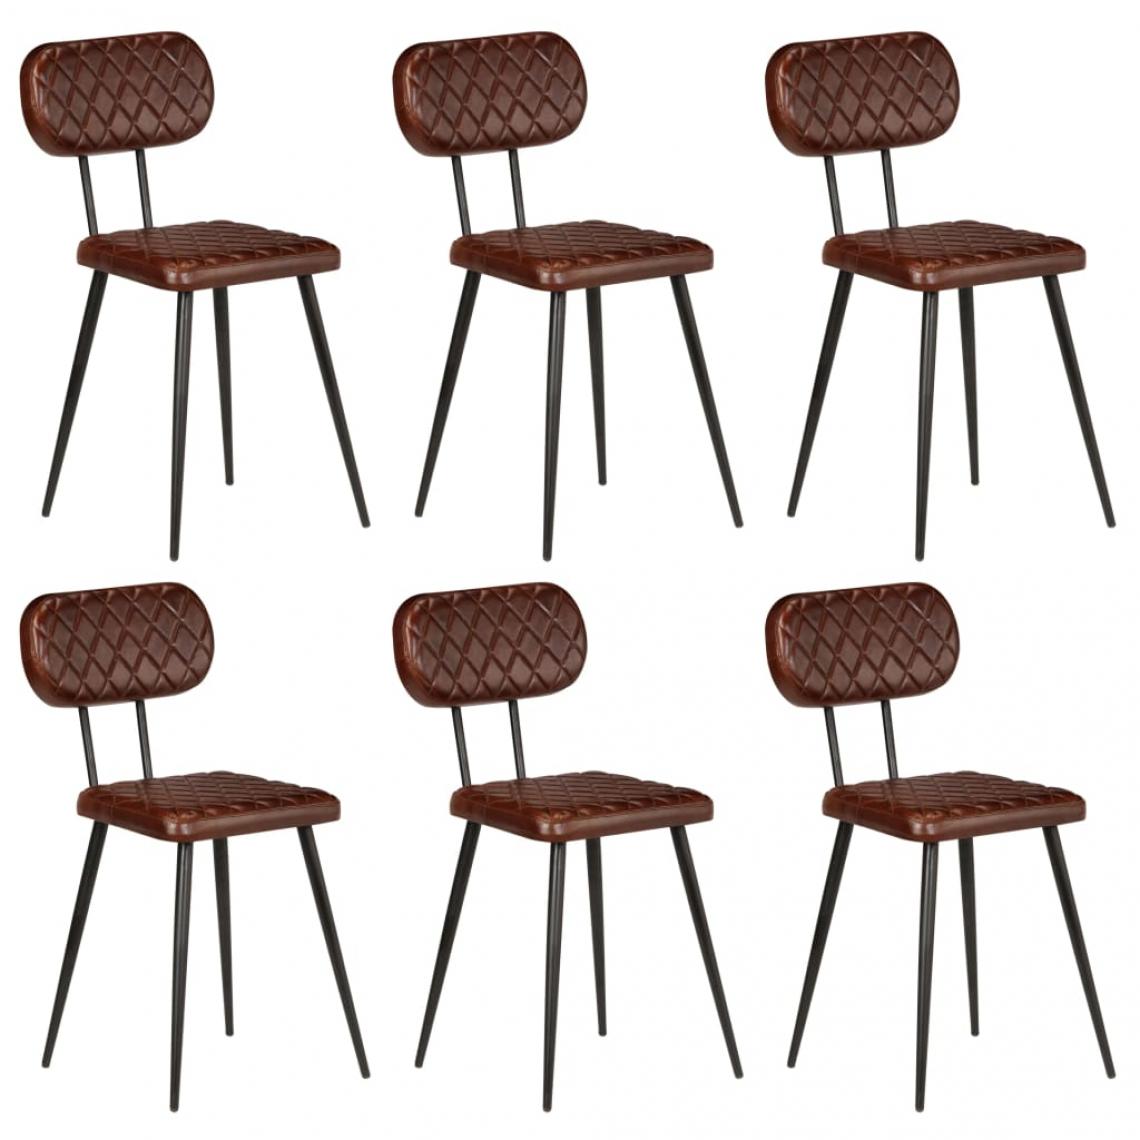 Decoshop26 - Lot de 6 chaises de salle à manger cuisine design vintage cuir véritable marron CDS022566 - Chaises